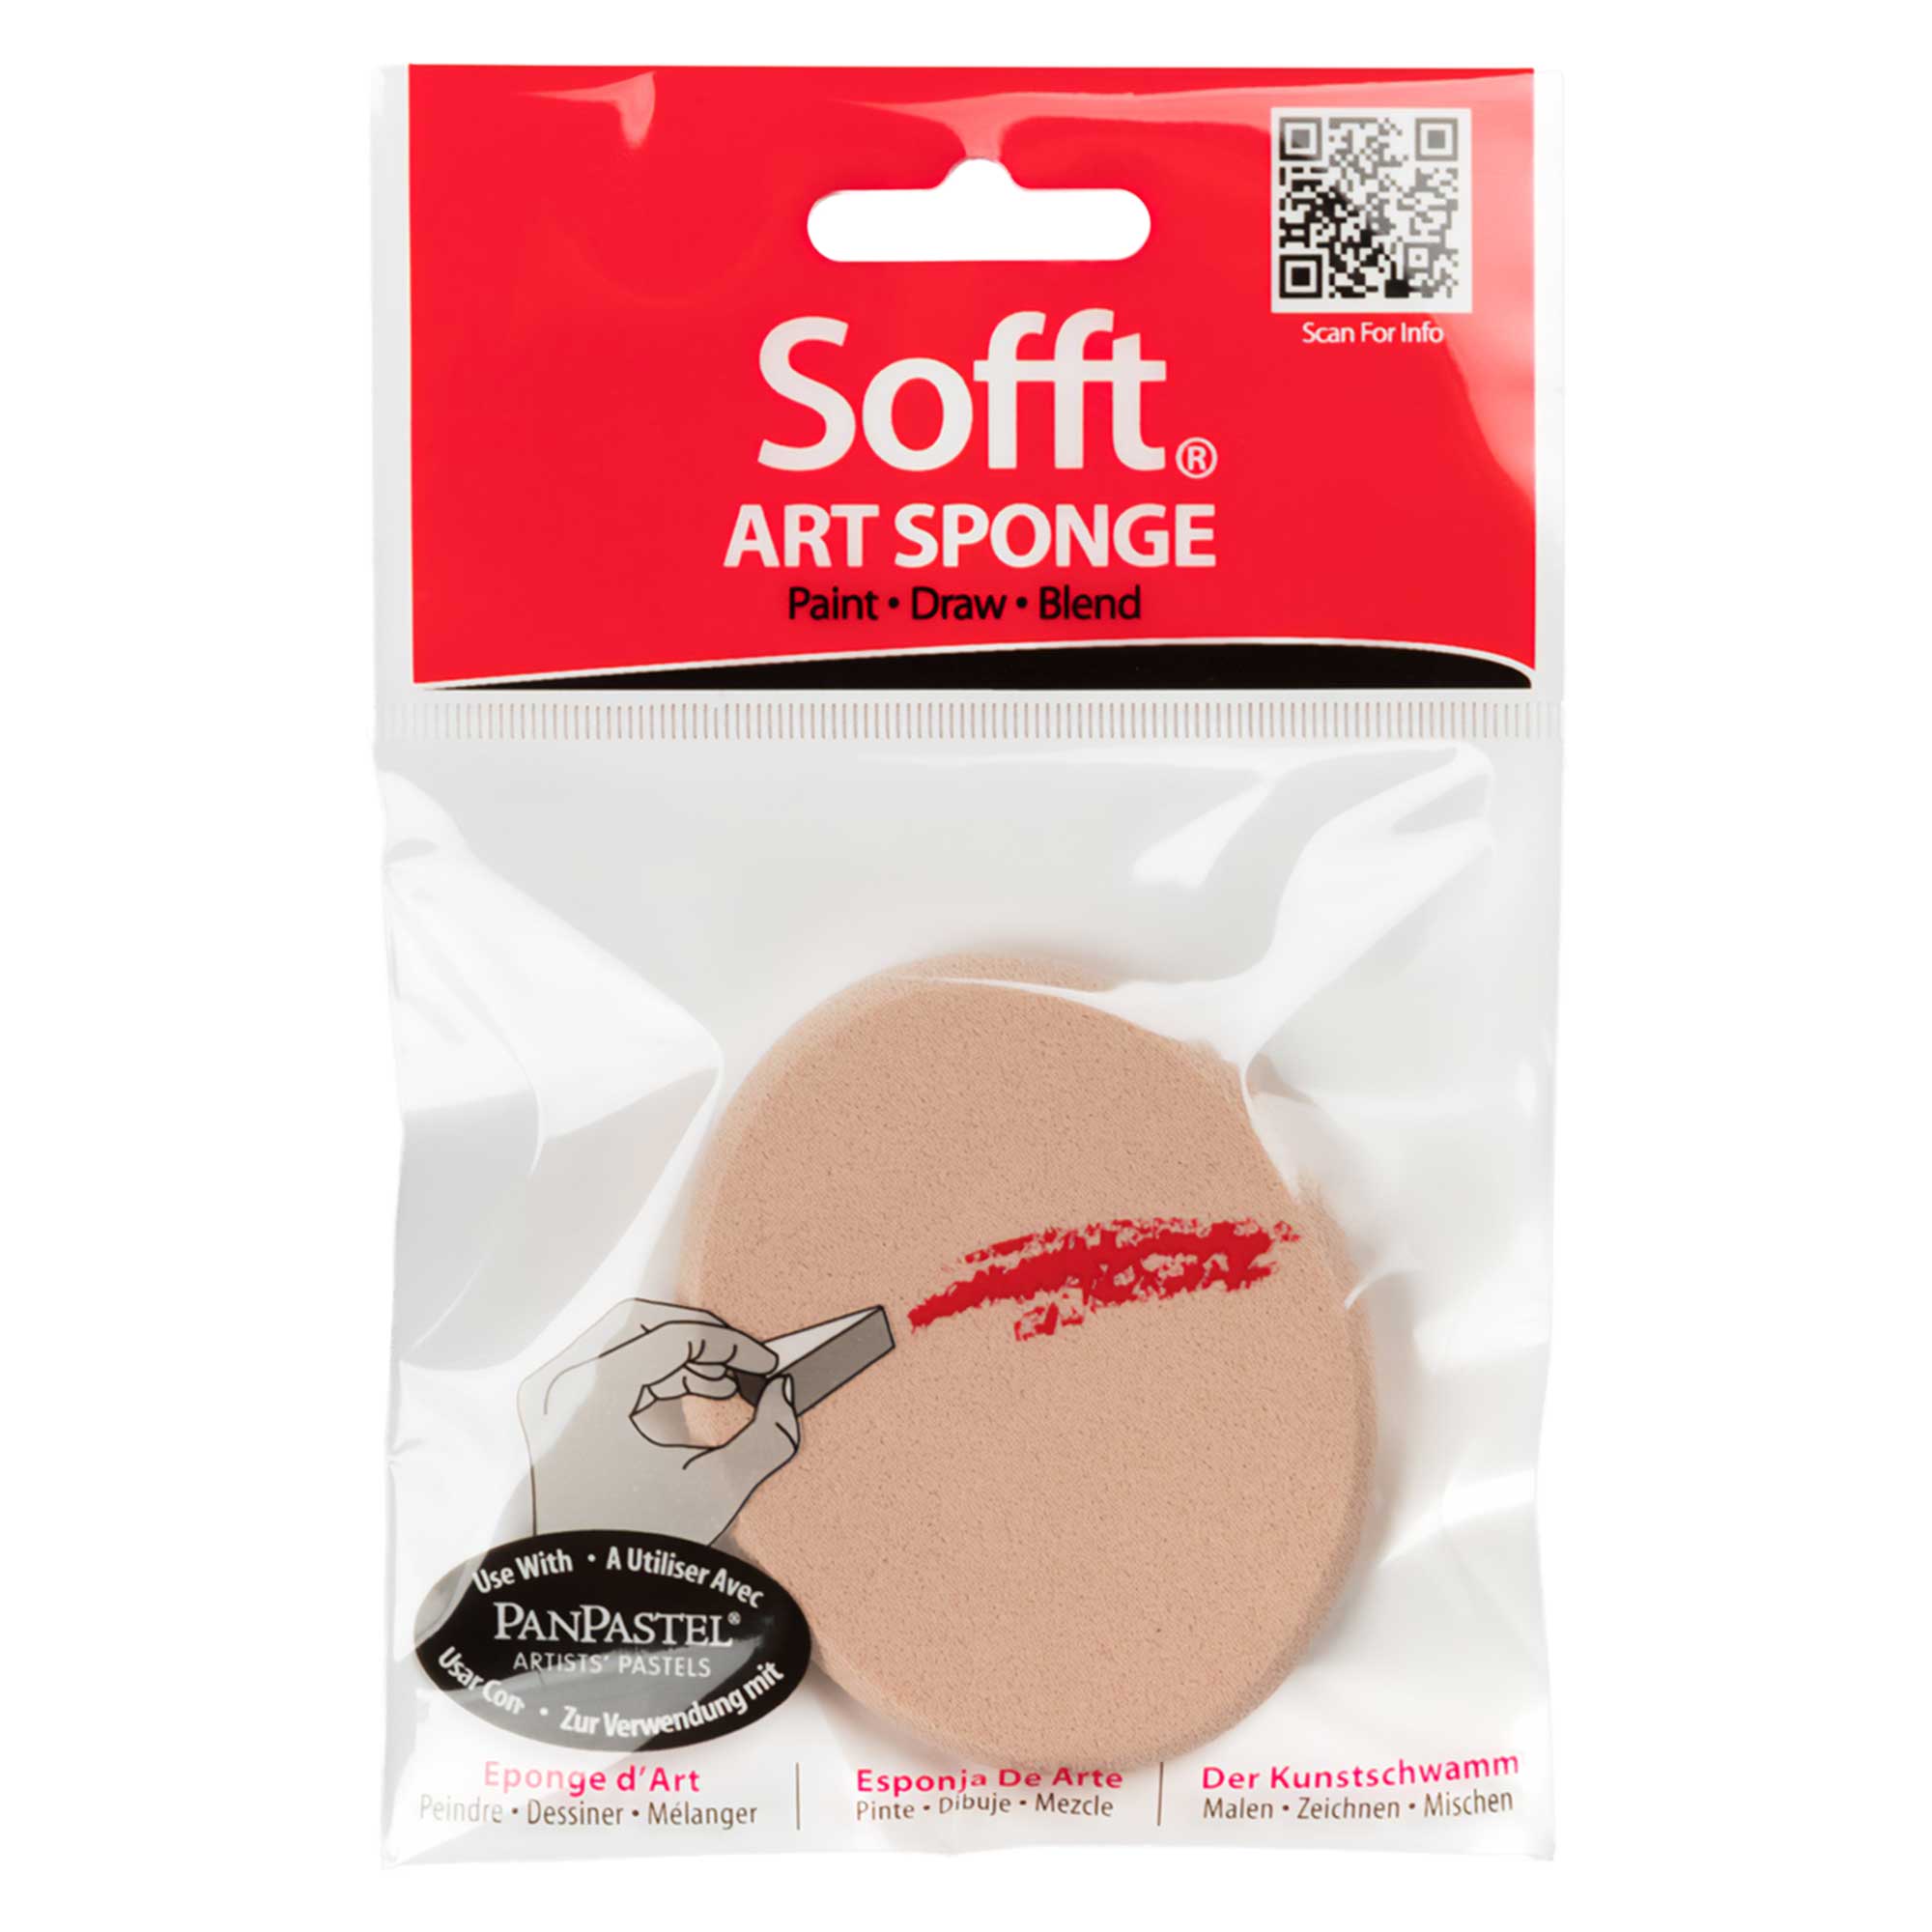 Pan Pastel - Sofft Big Oval Sponge Packaging